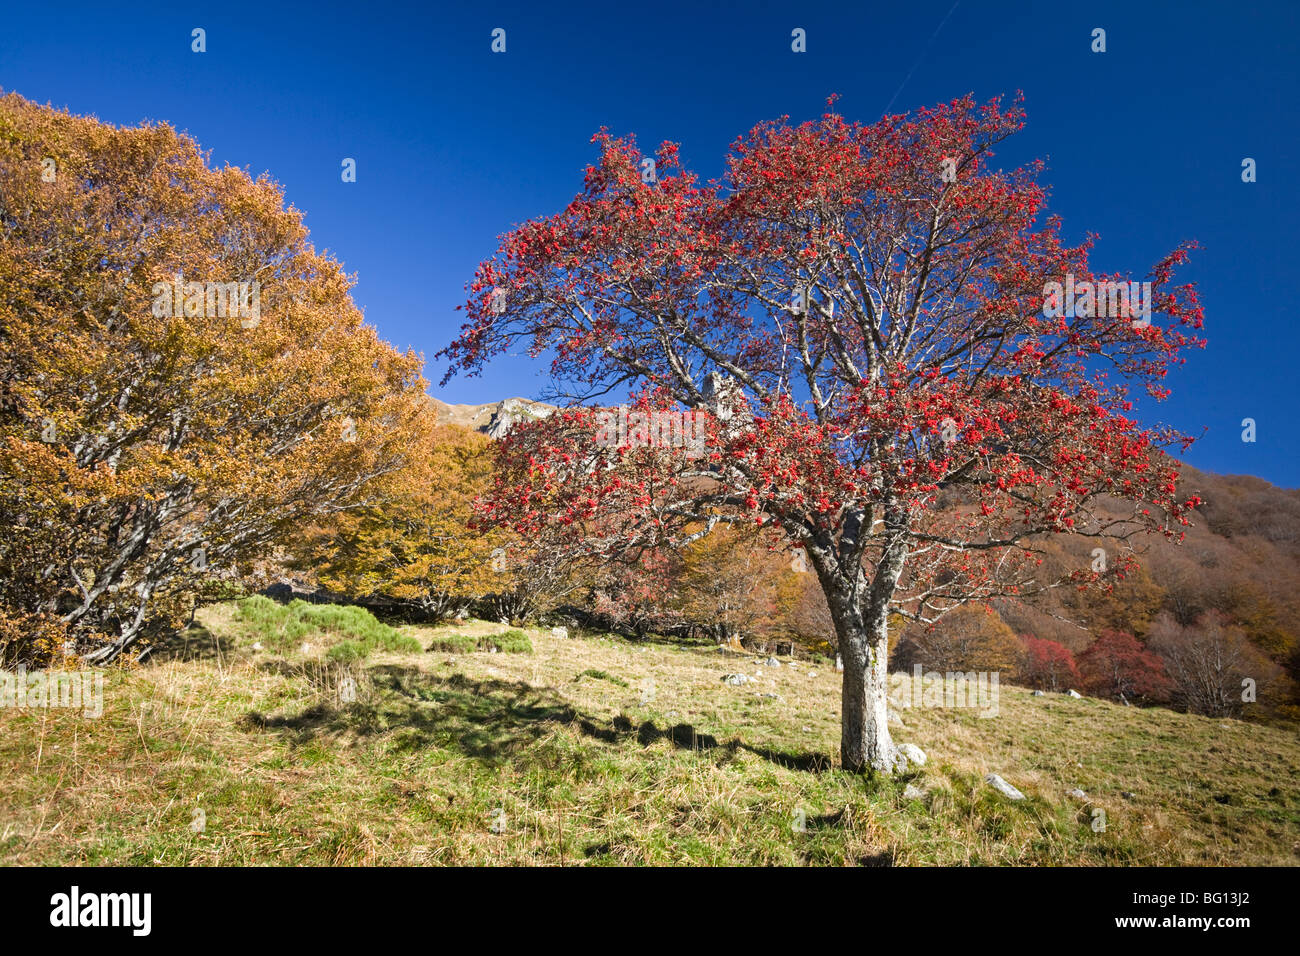 In Autumn, an European Rowan (Sorbus aucuparia) in the Chaudefour valley. Sorbier dans la vallée de Chaudefour, en automne. Stock Photo